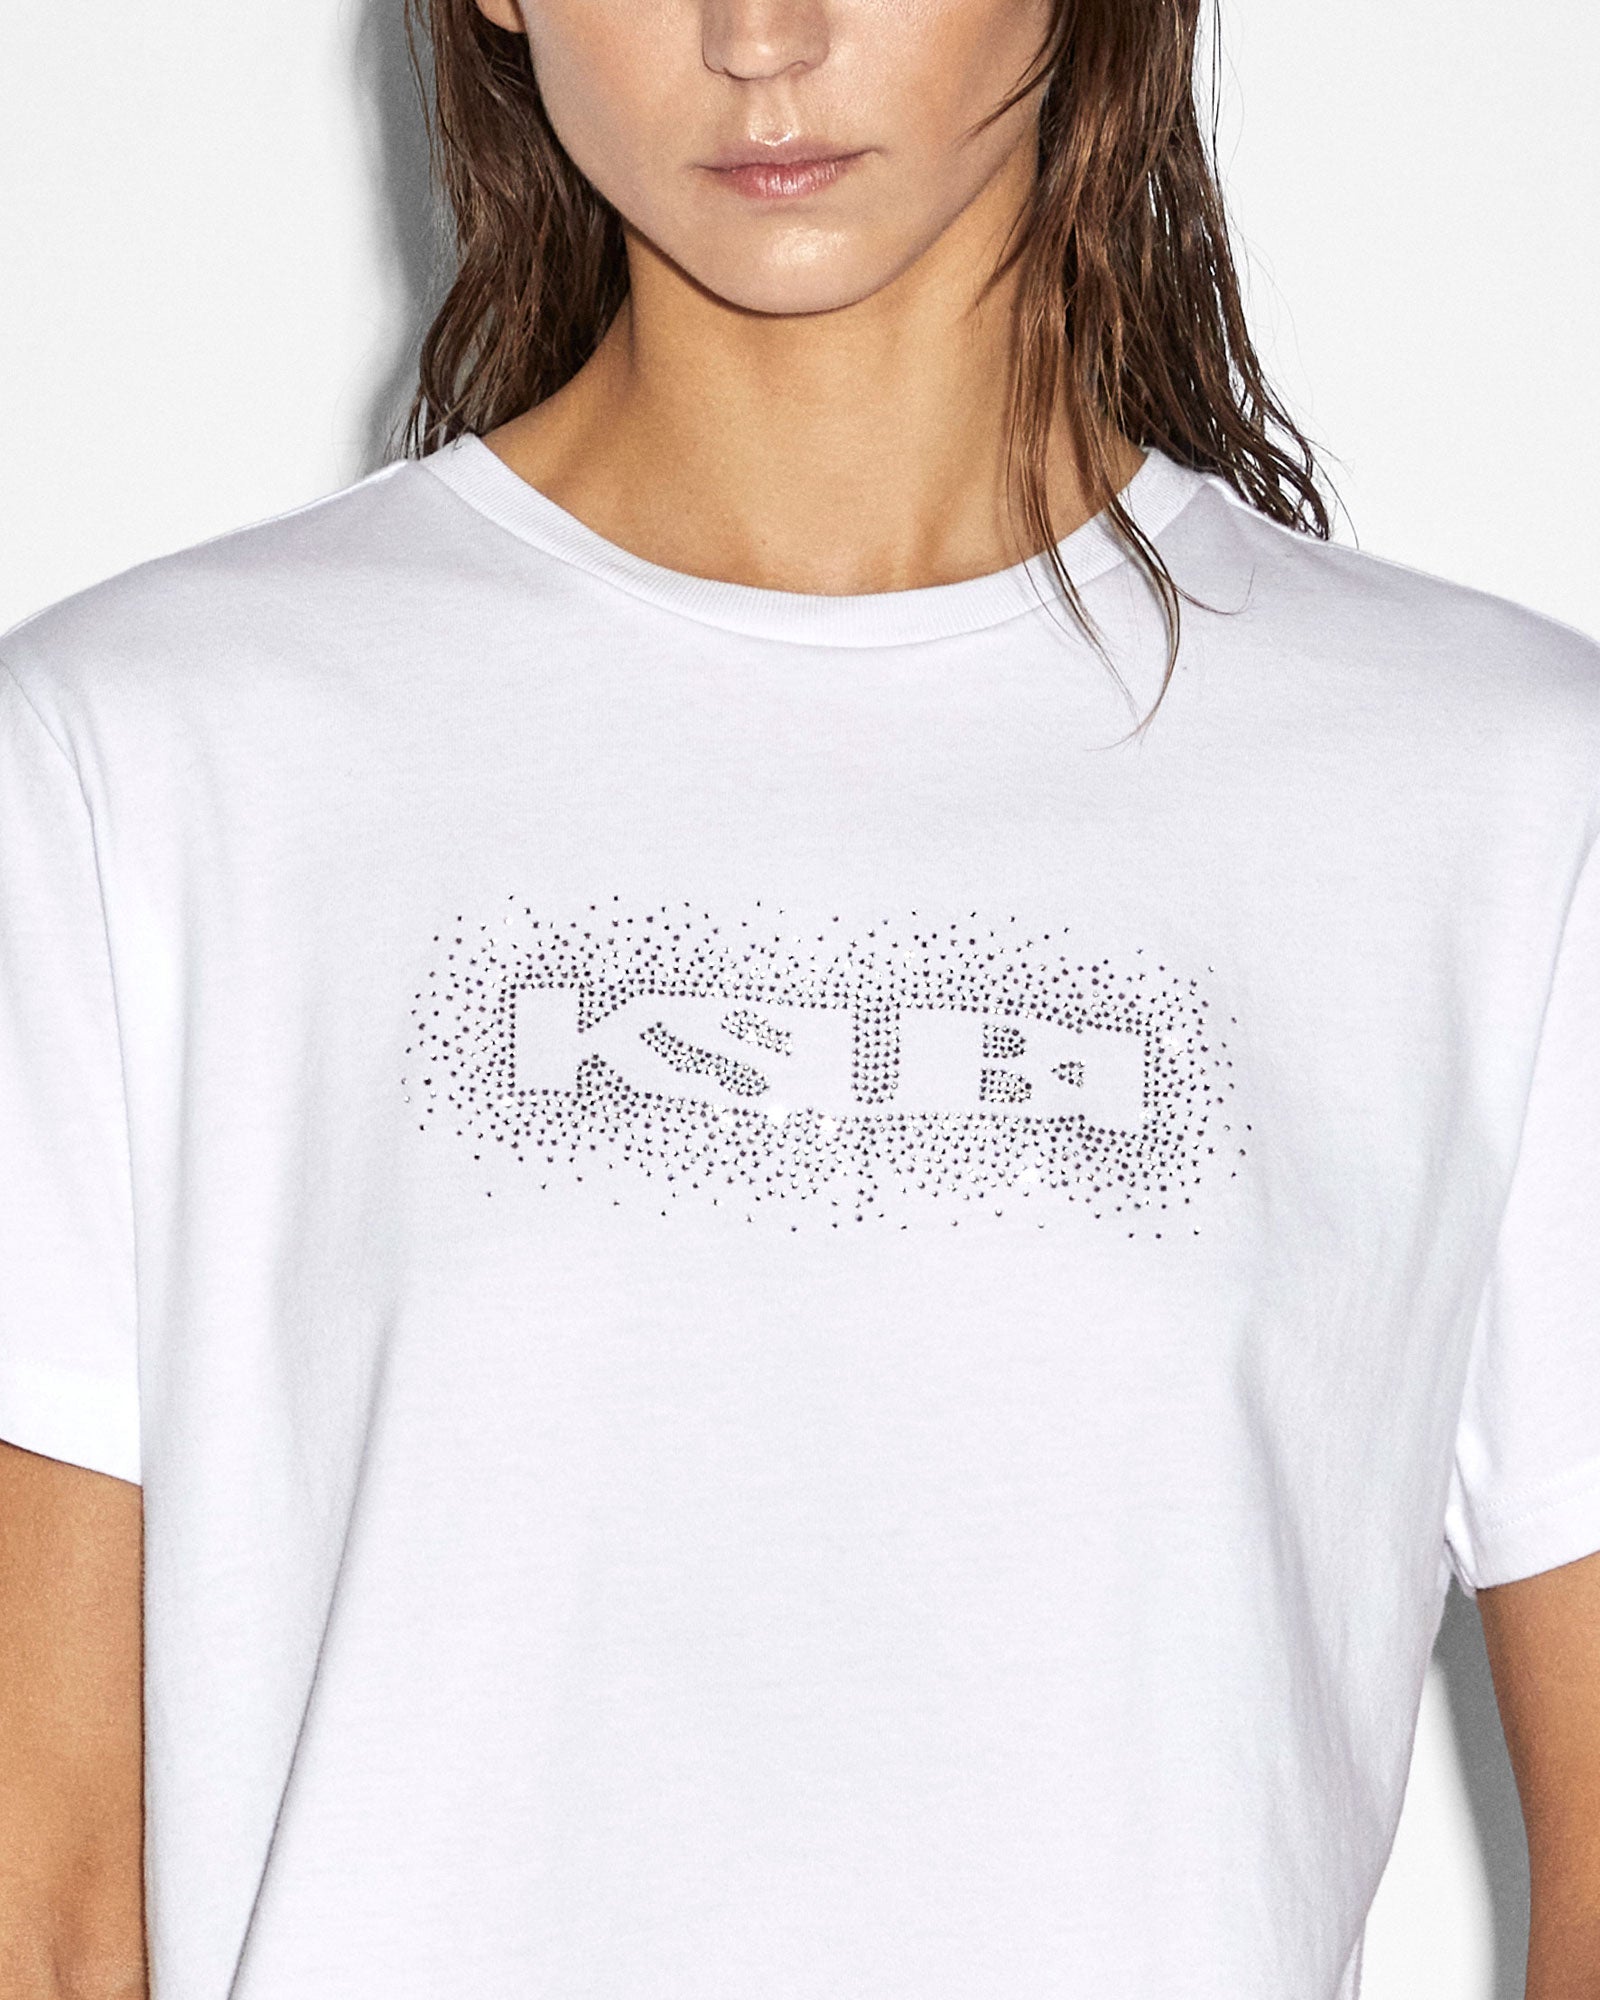 Sott Burst Klassic Short Sleeve T-shirt - White | Ksubi